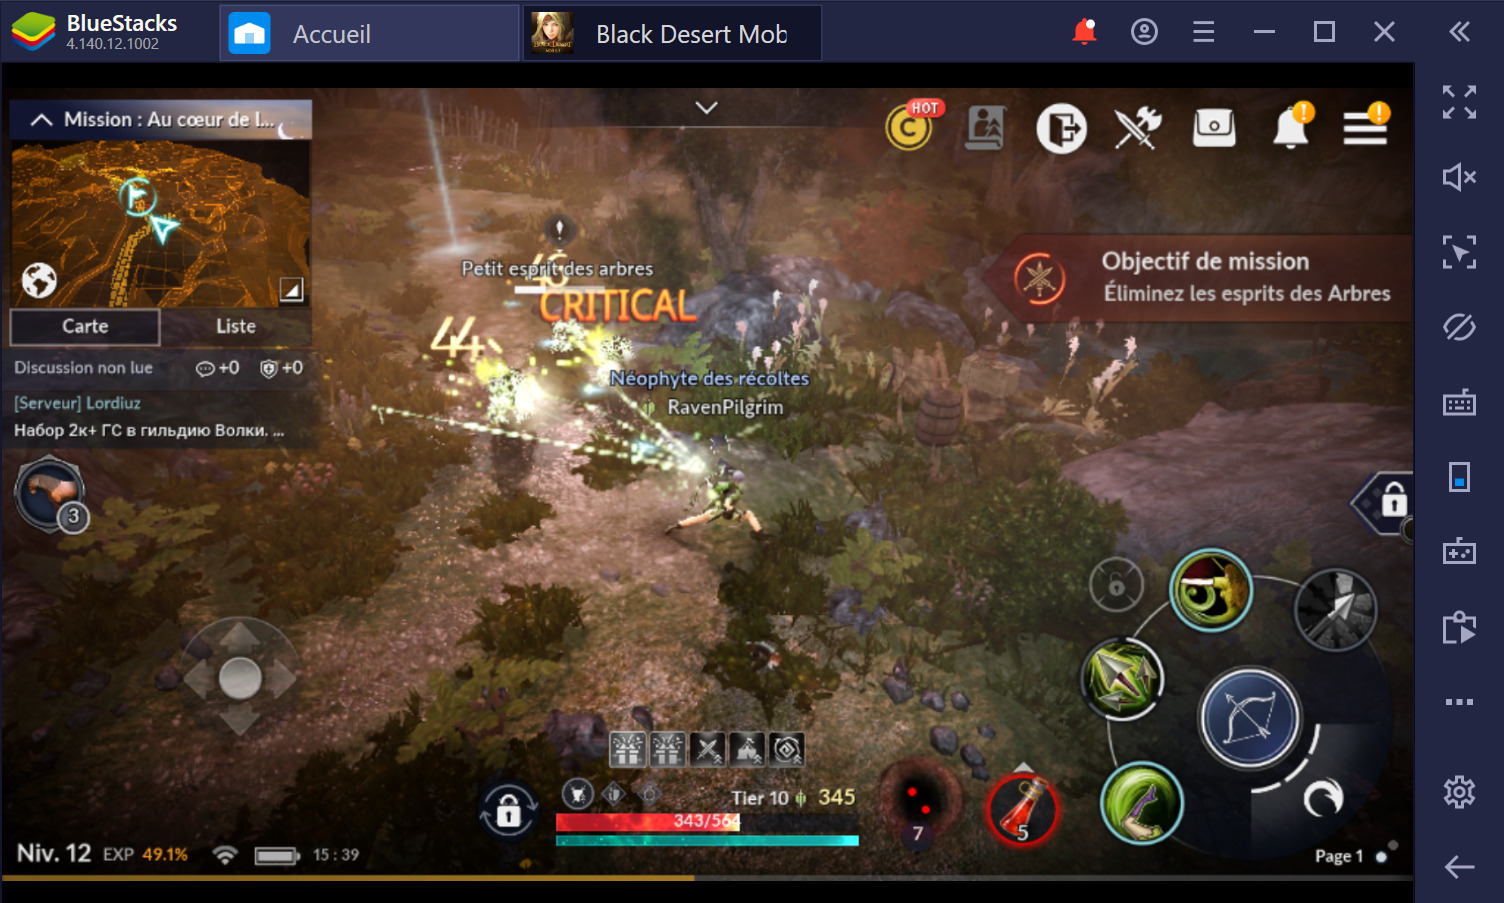 Black Desert Mobile sur PC : Guide des combats pour débutants